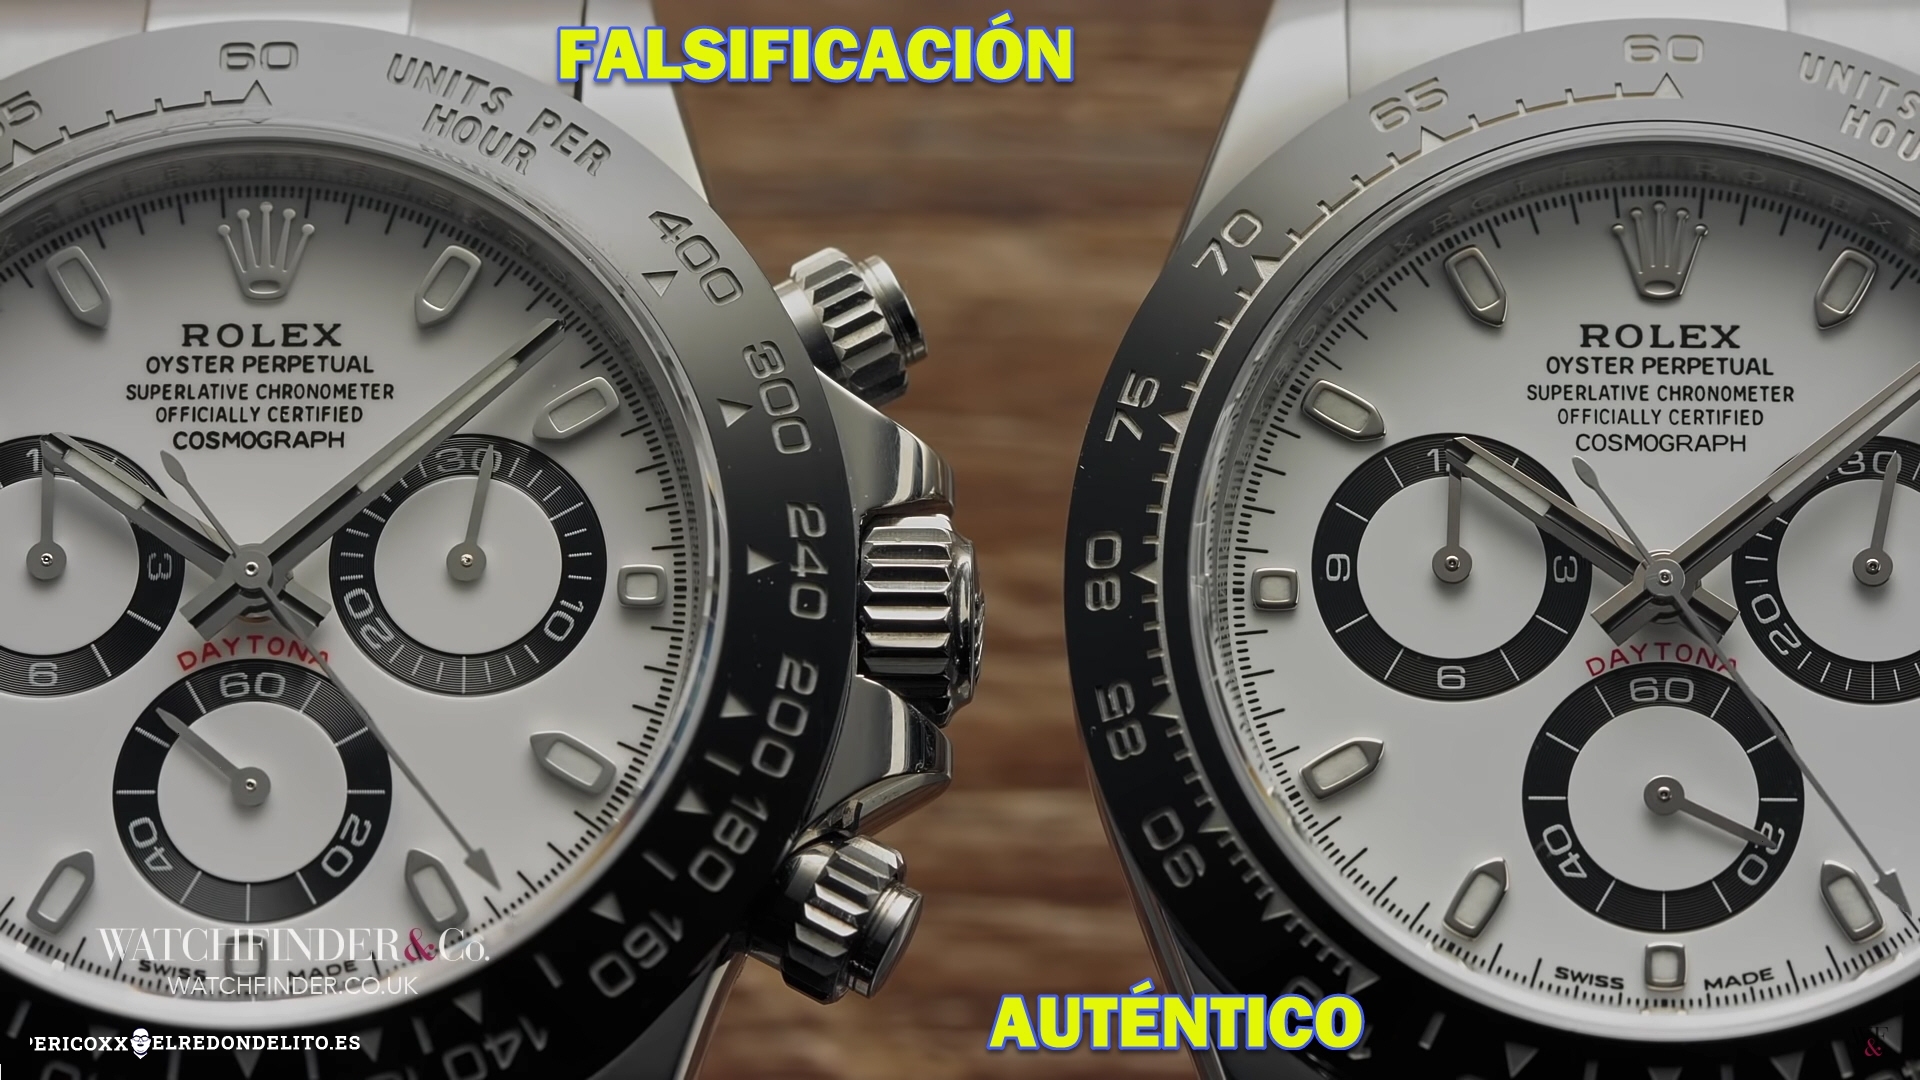 rolex_autentico_vs_falsificacion_elredondelito.es_001